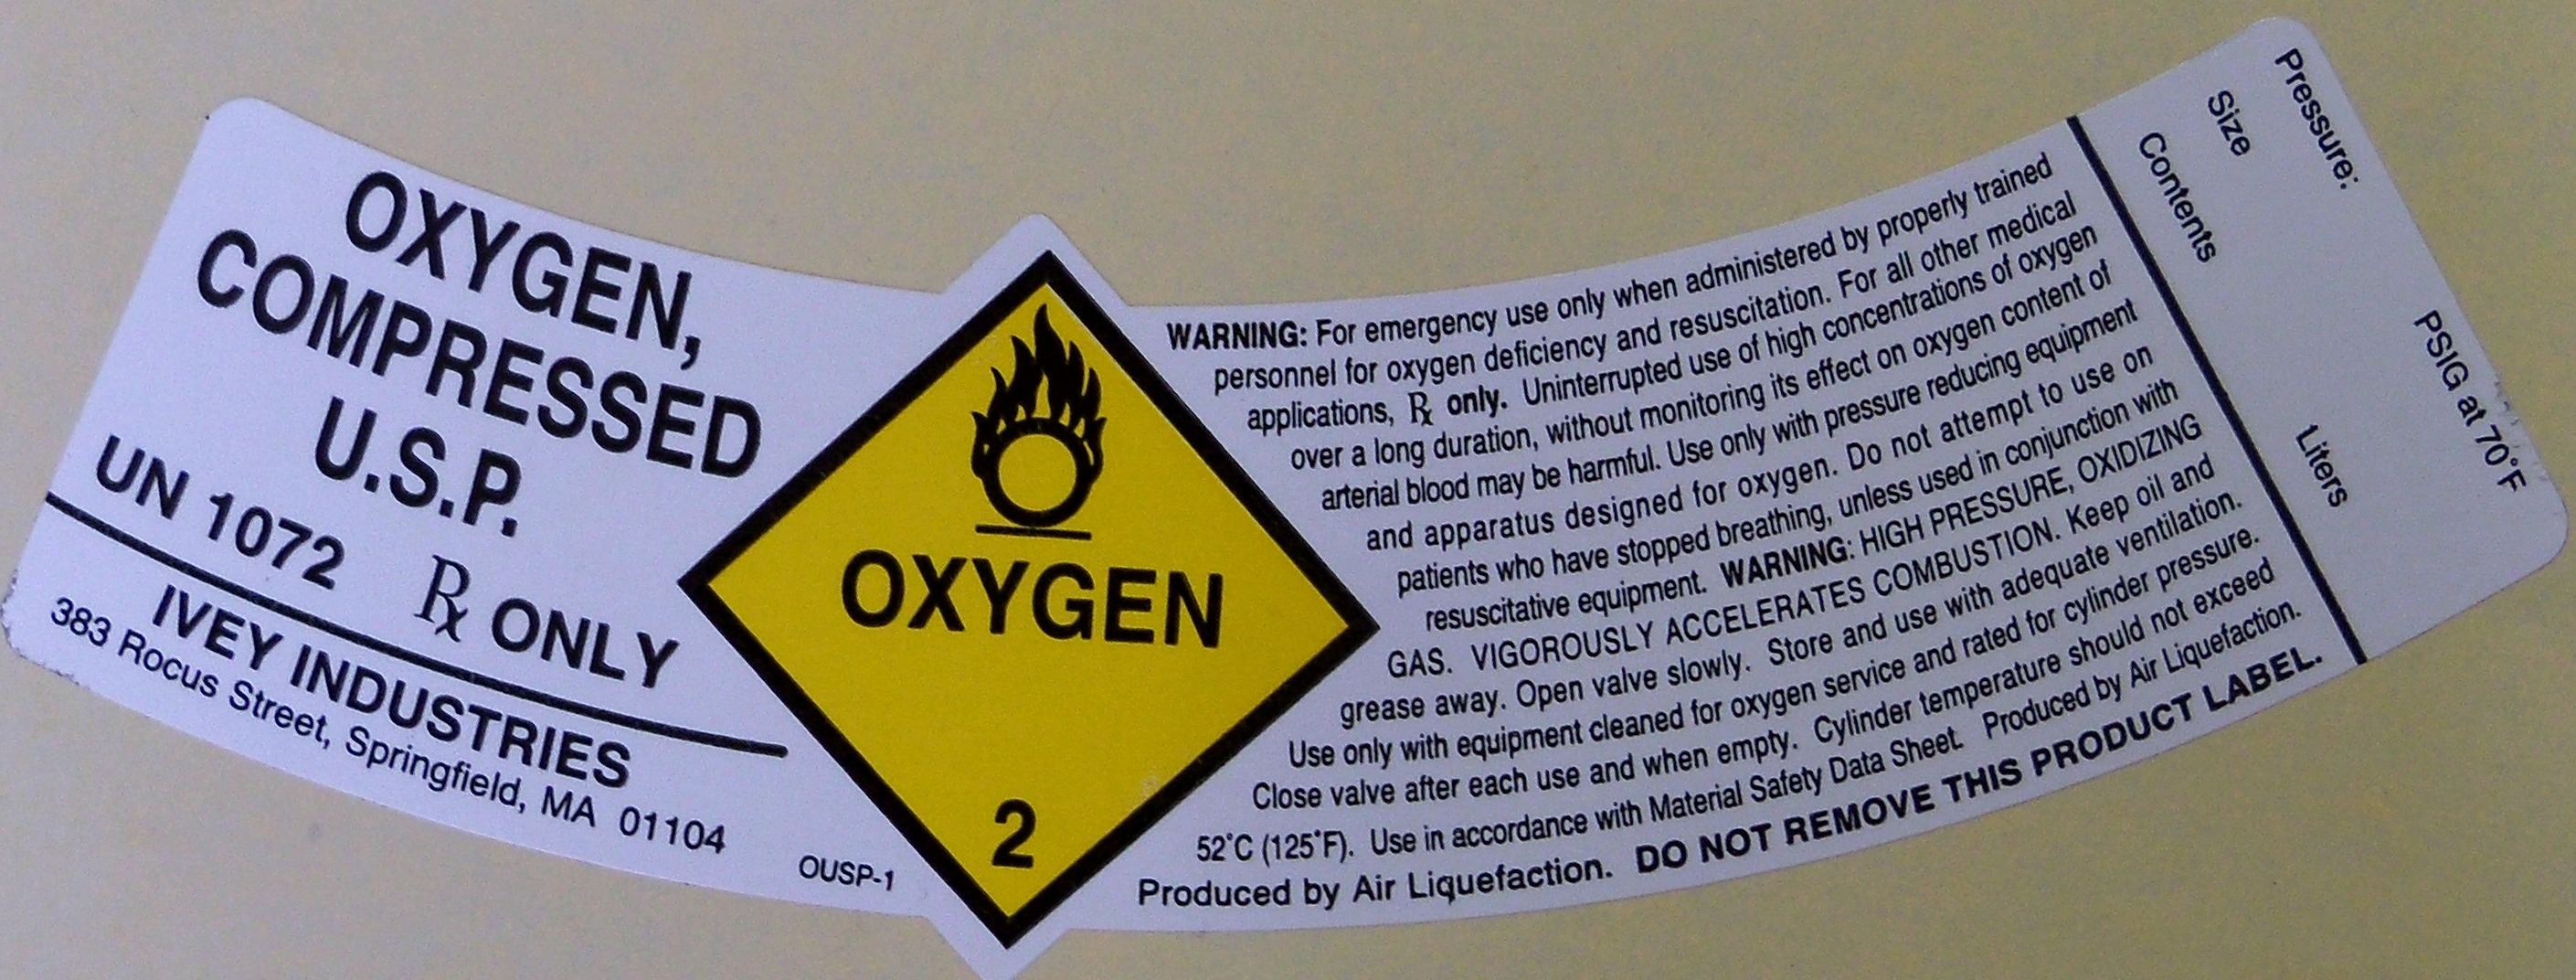 oxygen compressed usp label